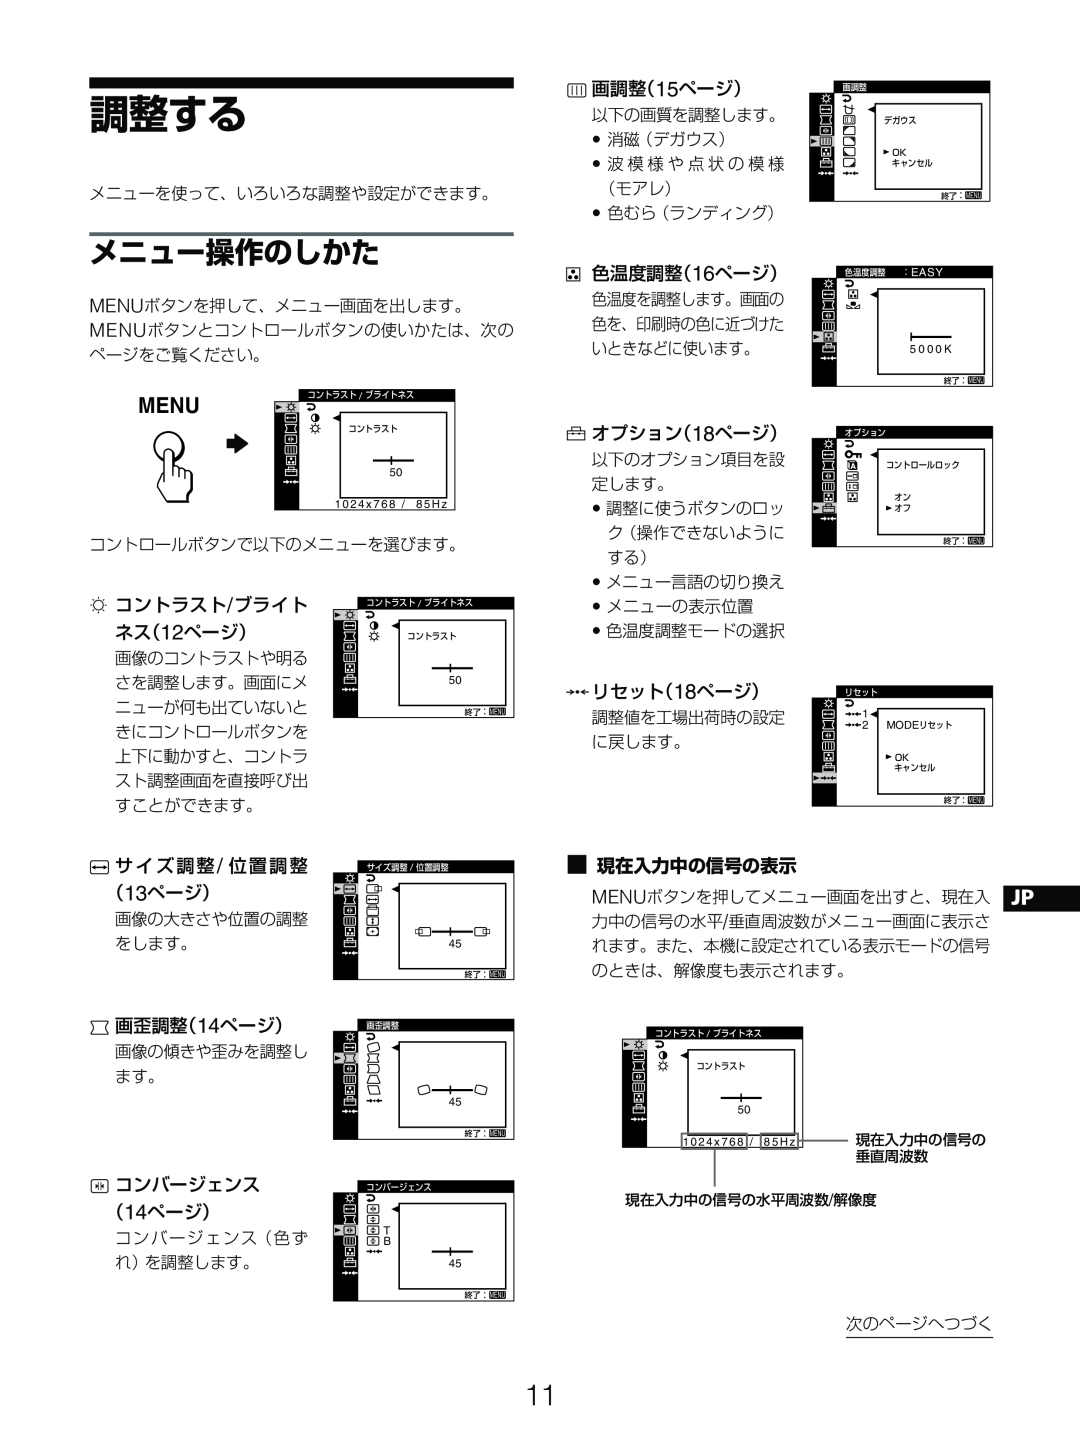 Sony GDM-5510 調整する, メニュー操作のしかた, Menu, 画調整（15ページ）, 色温度調整（16ページ）, オプション（18ページ）, コントラスト/ブライト ネス（12ページ）, 0リセット（18ページ）, （14ページ） 